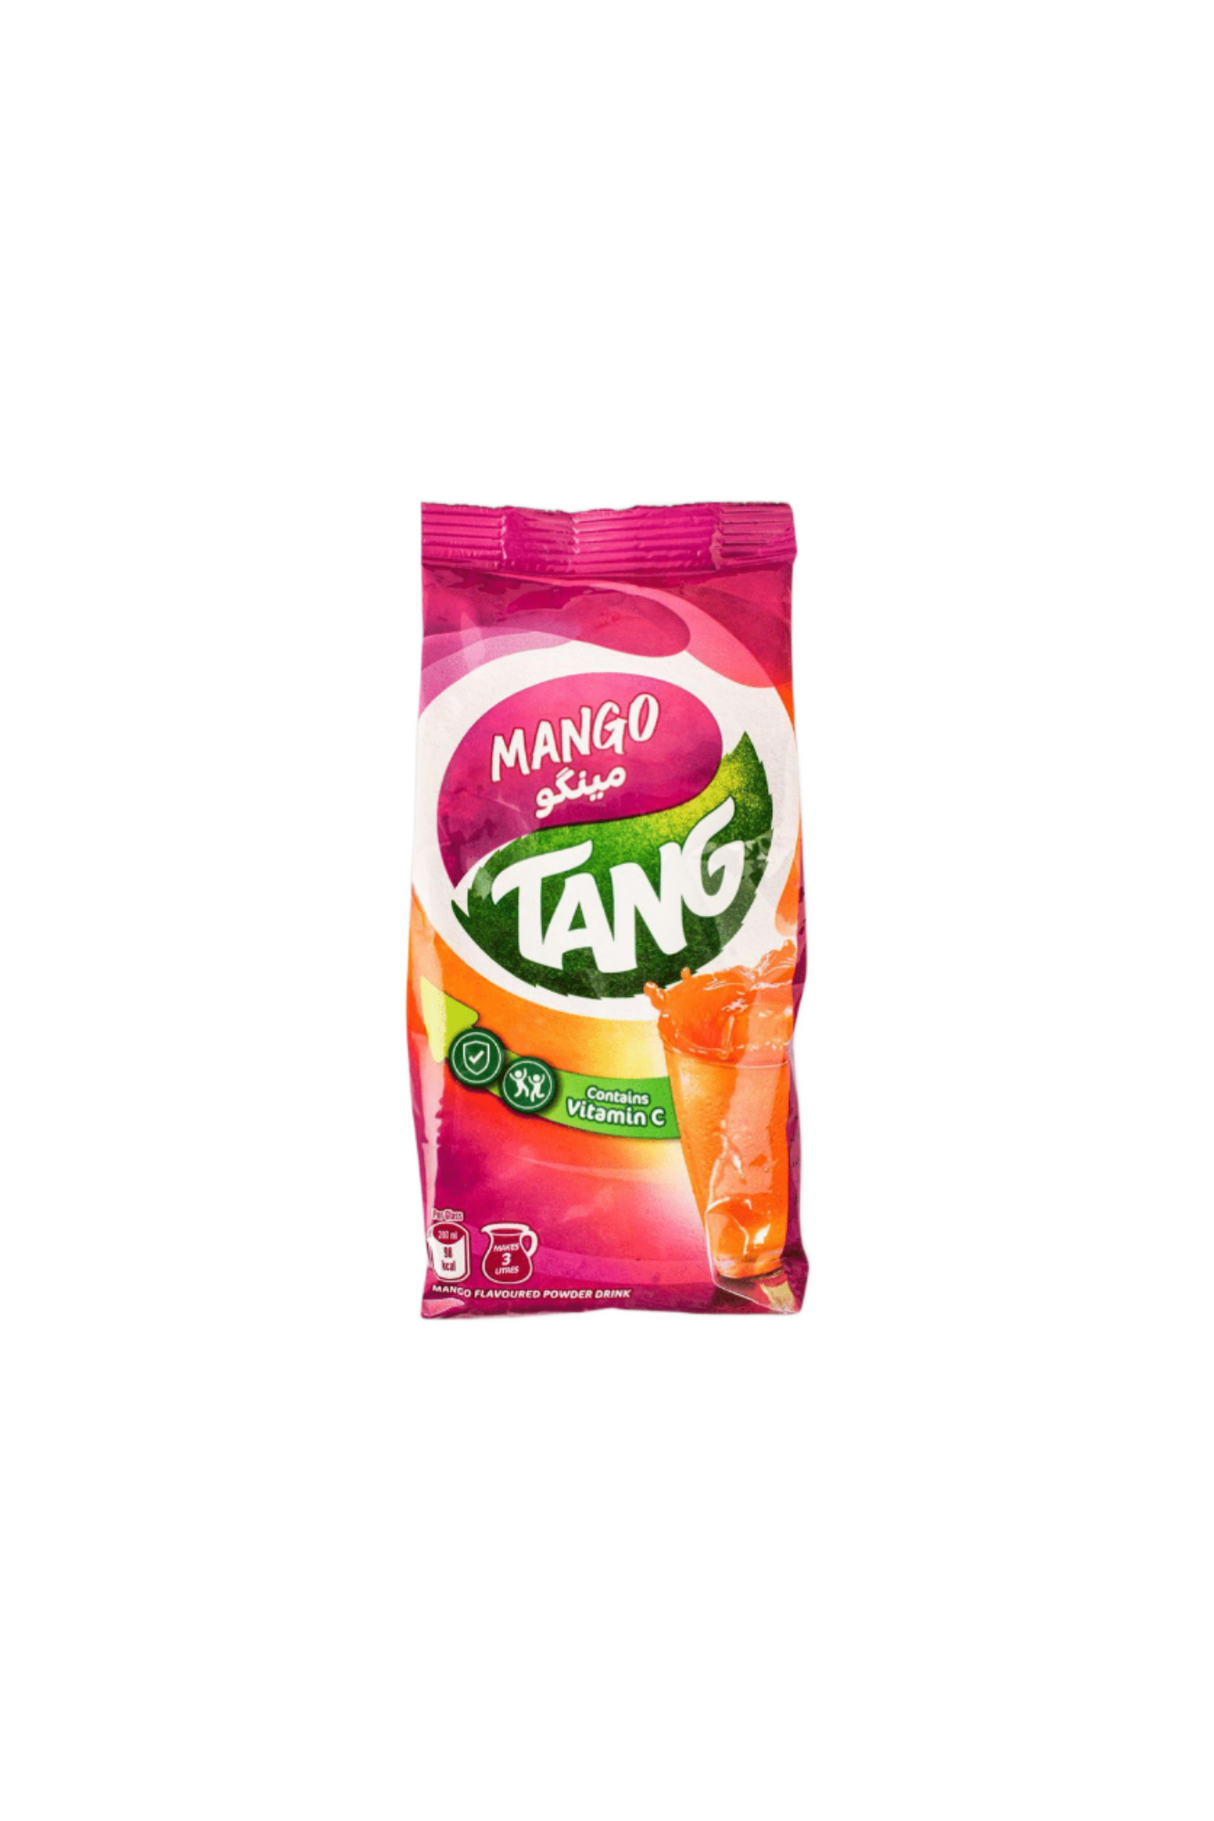 tang mango 375g